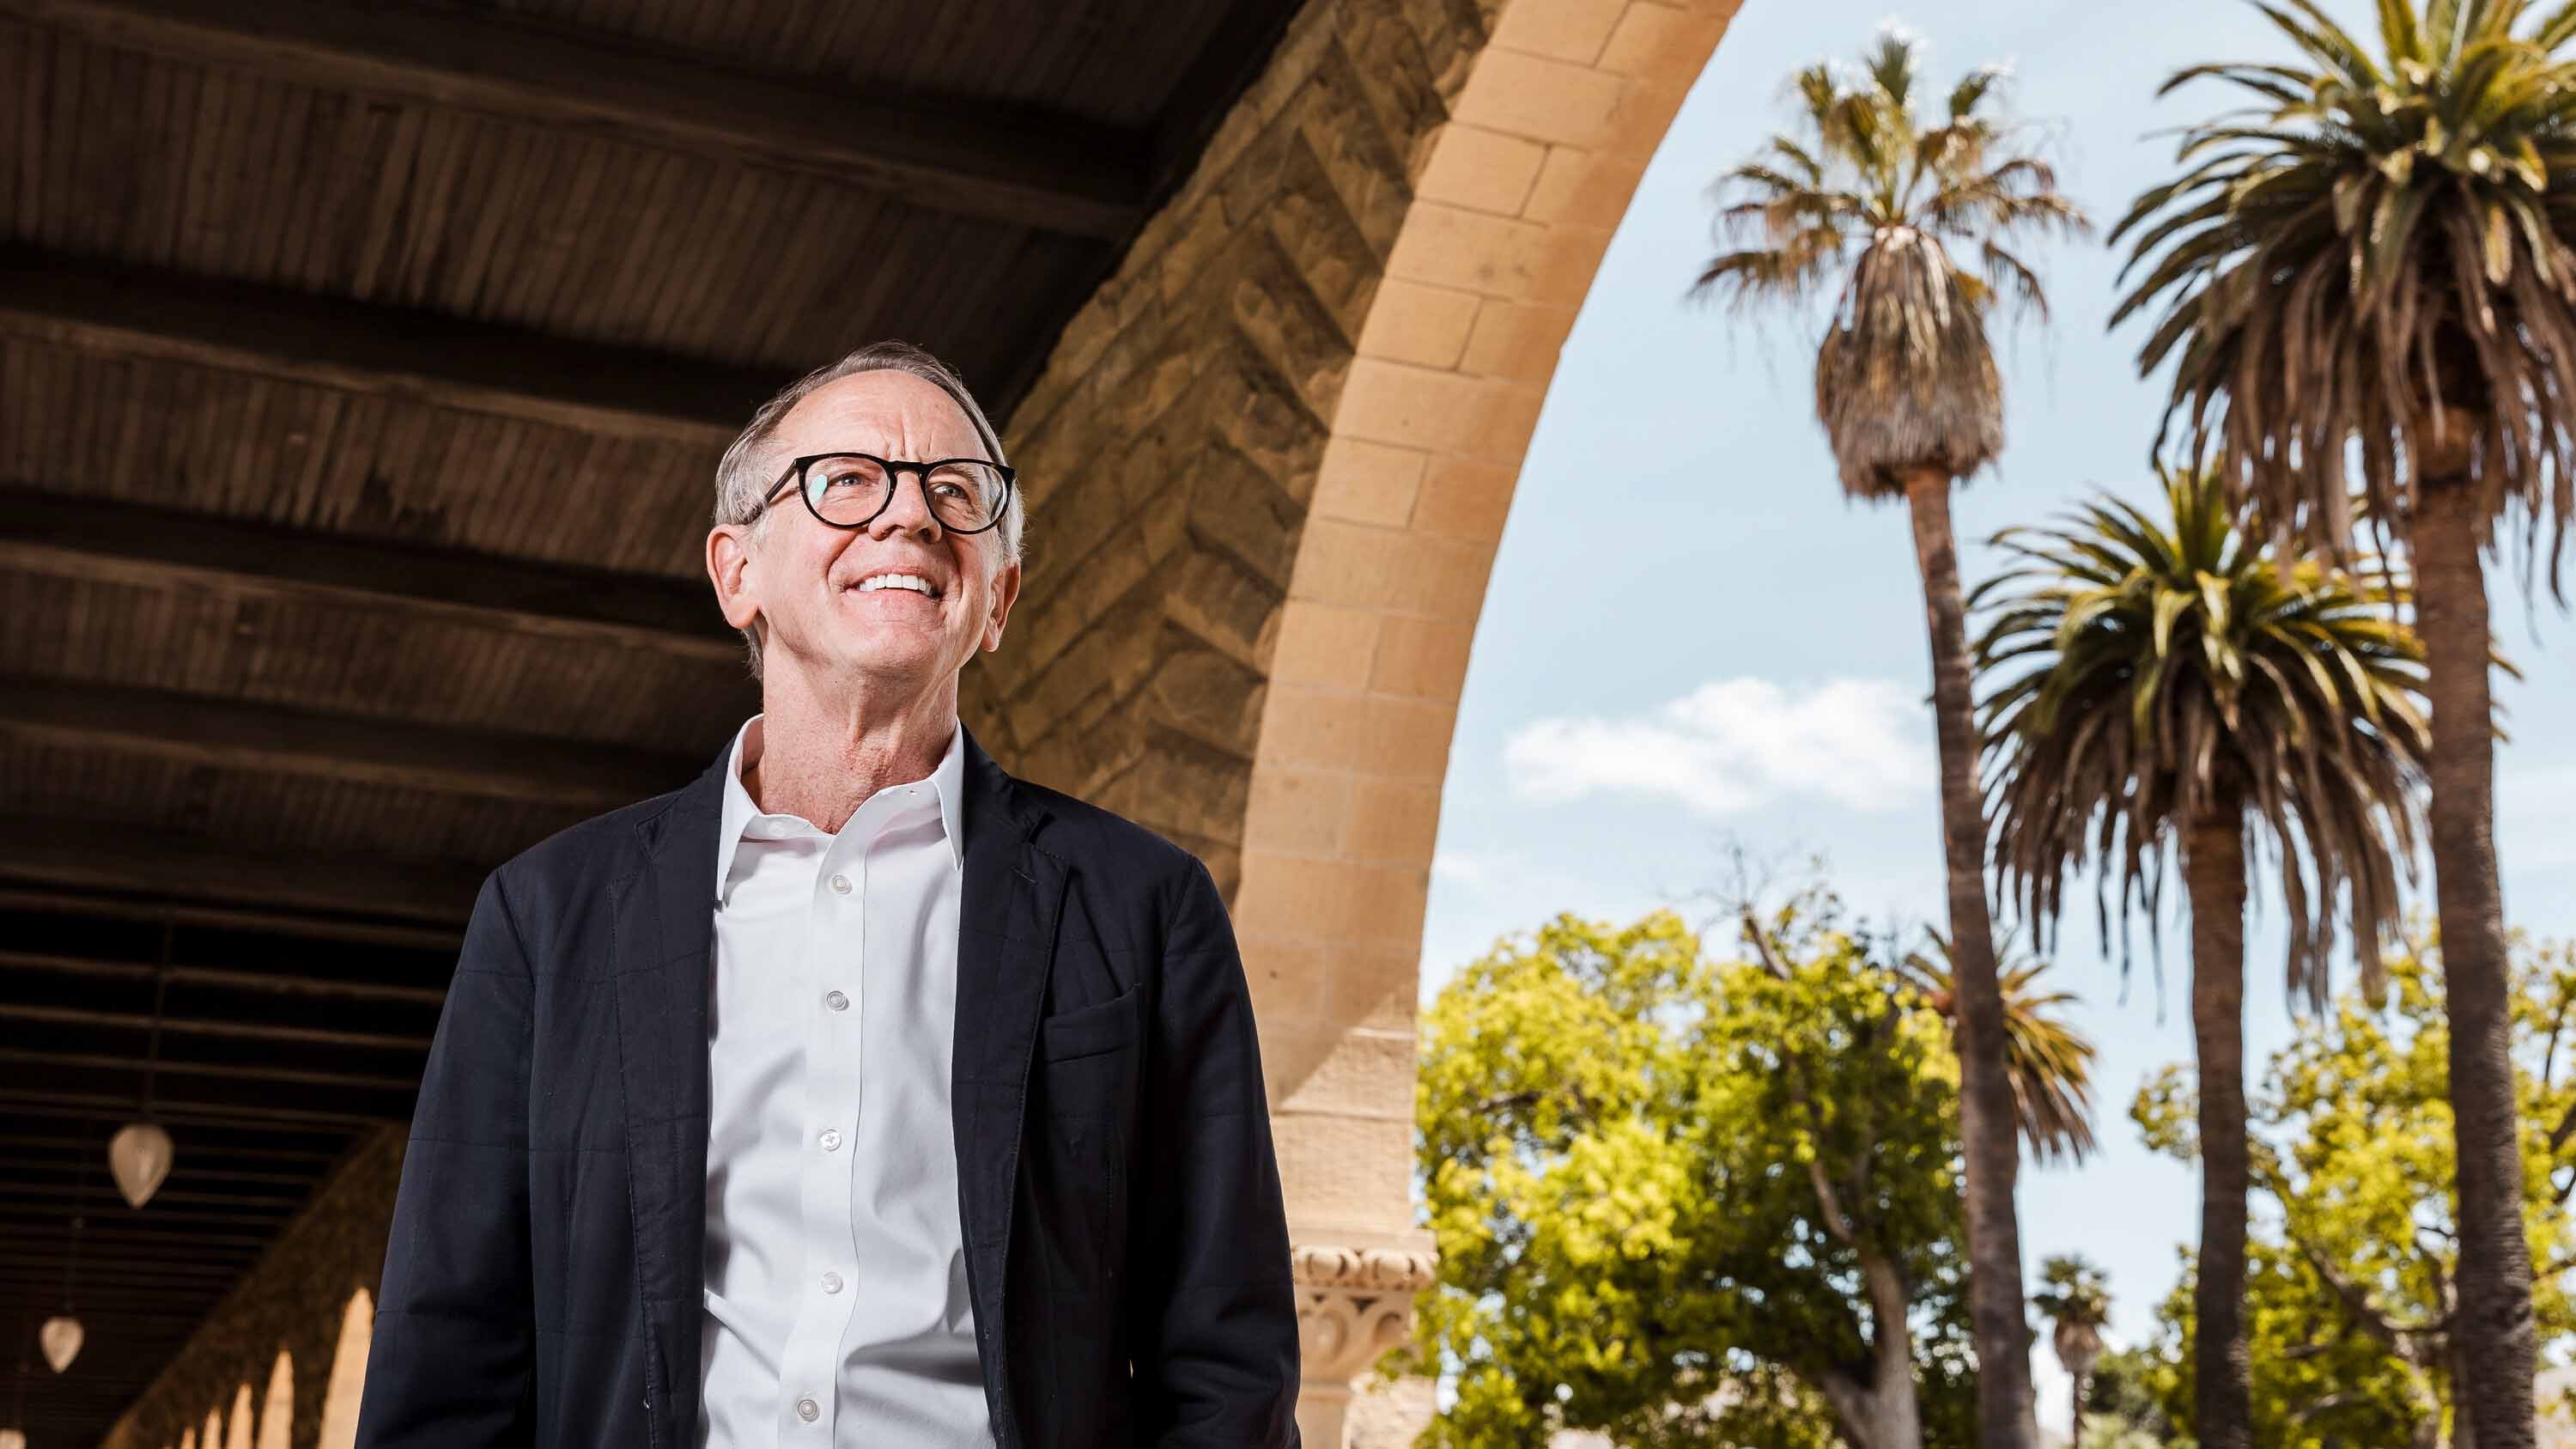 Tỷ phú John Doerr tài trợ 1,1 tỷ USD cho Đại học Stanford. Ảnh: NewYorkT imes